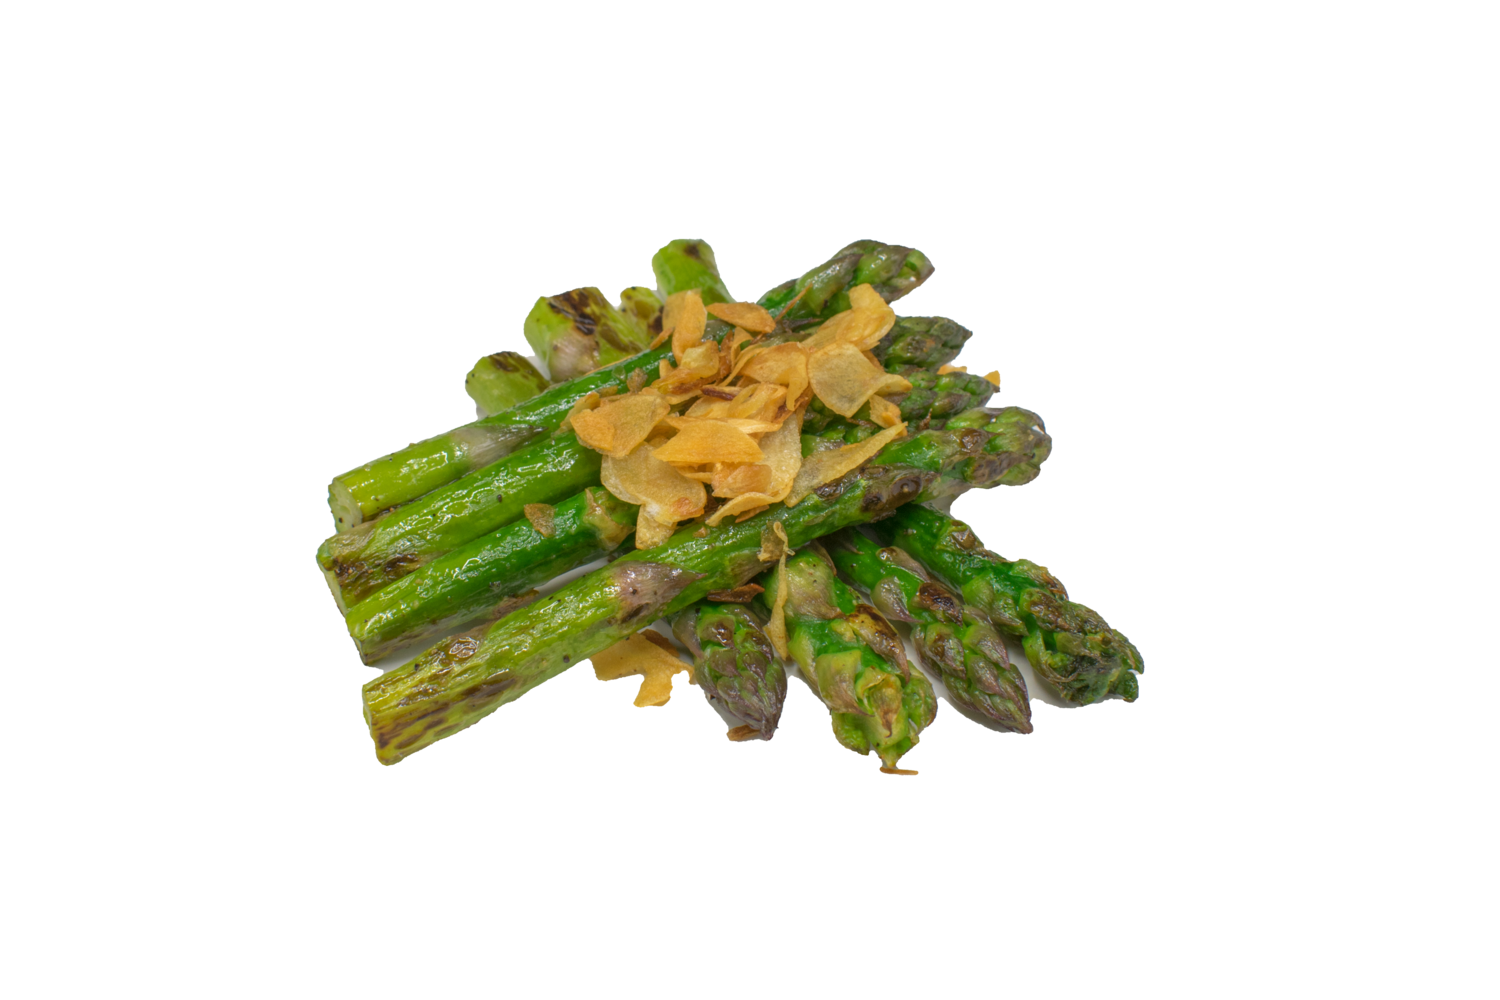 Fried aspargus